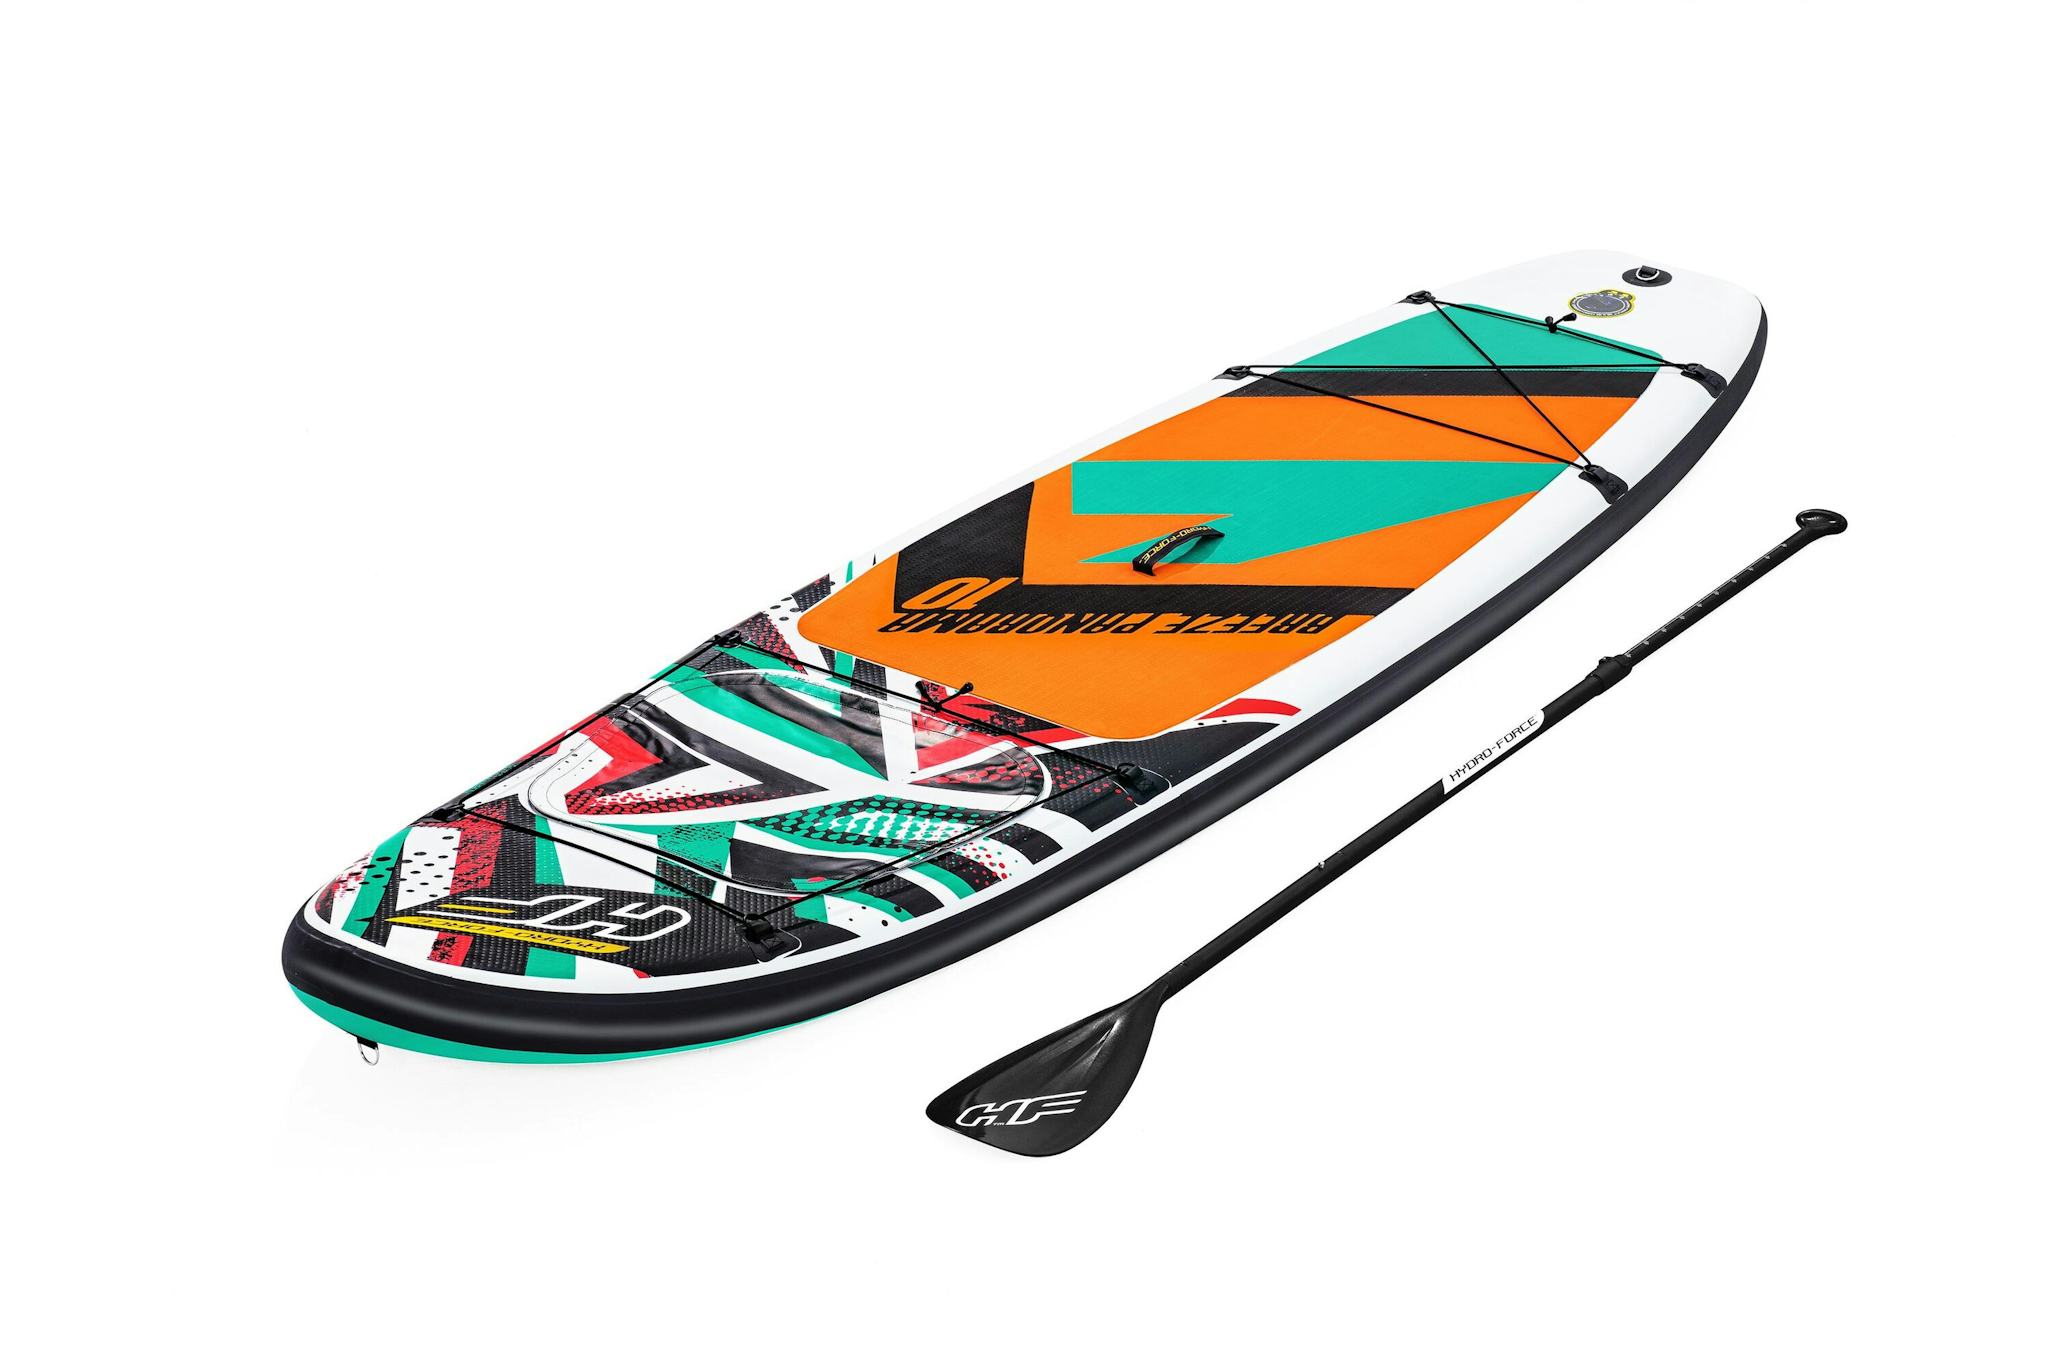 Sports d'eau Paddle SUP gonflable Hydro-Force™ Breeze Panorama, 305 x 84 x 12 cm avec hublot, pagaie, leash, pompe, 1 aileron et sac à dos de transport Bestway 3